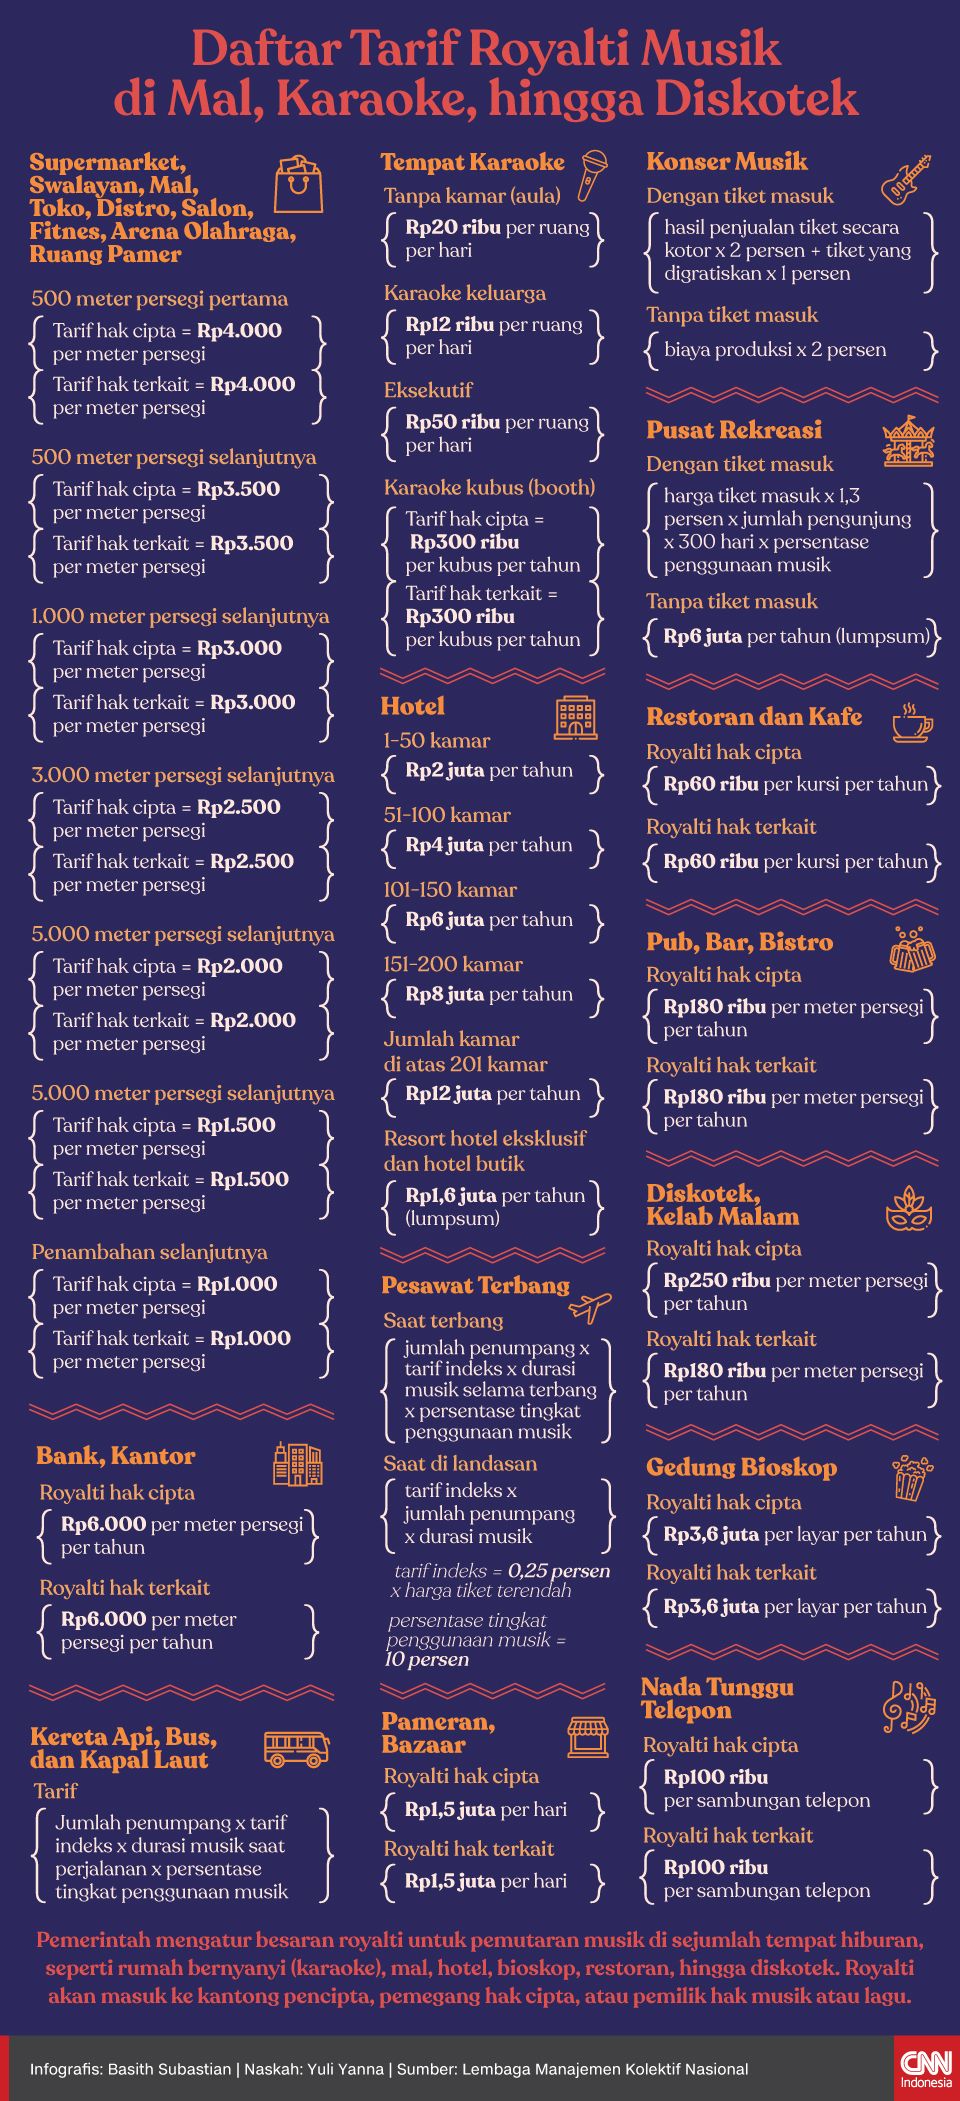 Infografis Daftar Tarif Royalti Musik di Mal, Karaoke, hingga Diskotek